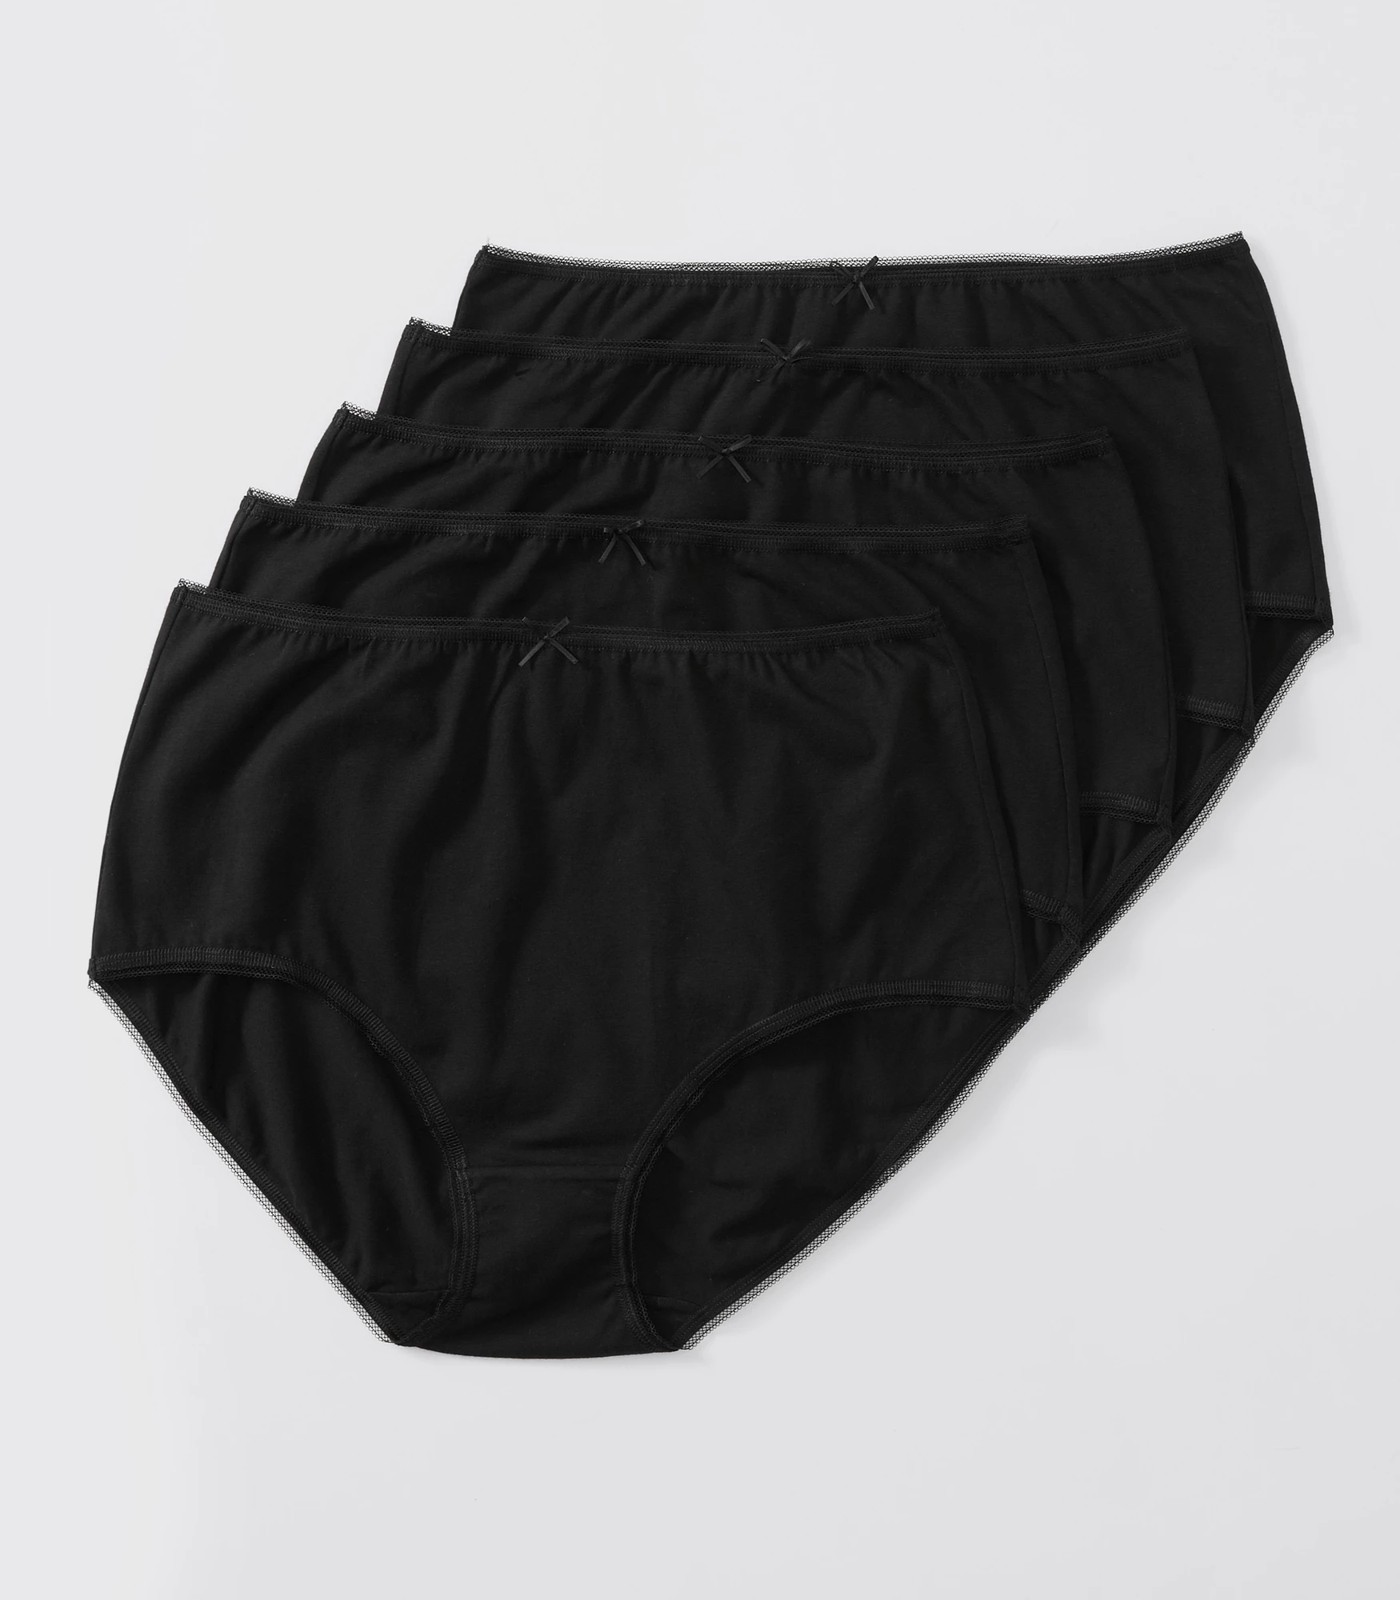 BLACK BOW Underwear High Waist Modal Stretch Brief 5 Pack Size